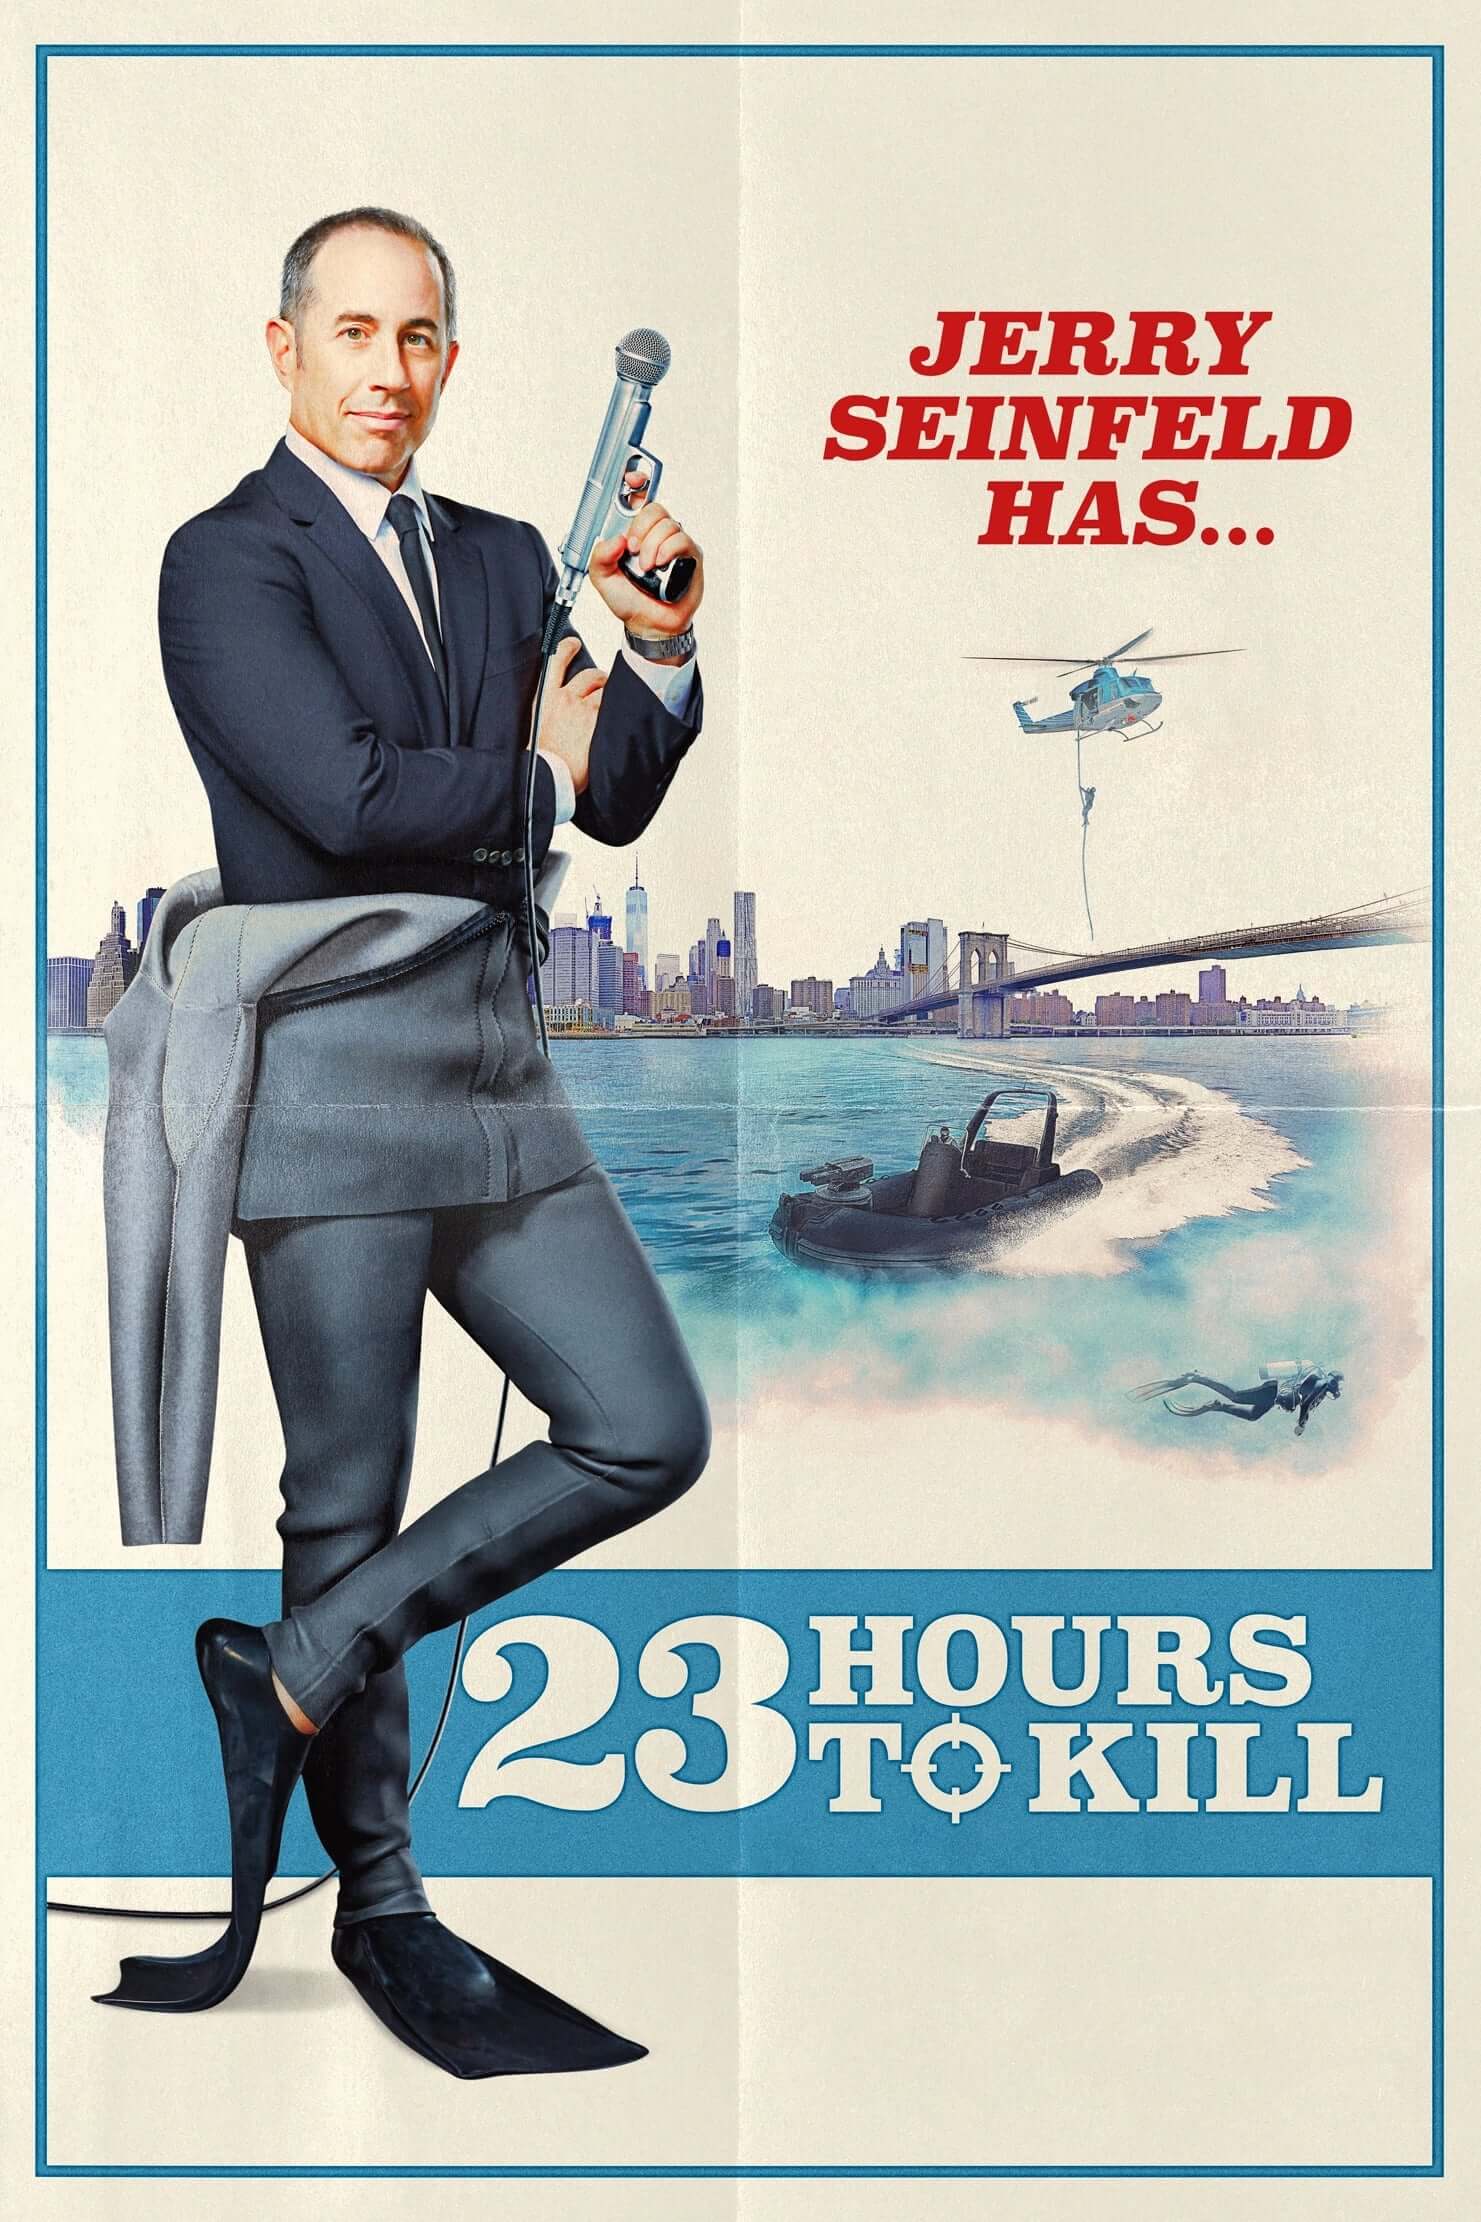 جری ساینفلد: 23 ساعت برای کشتن (Jerry Seinfeld: 23 Hours to Kill)